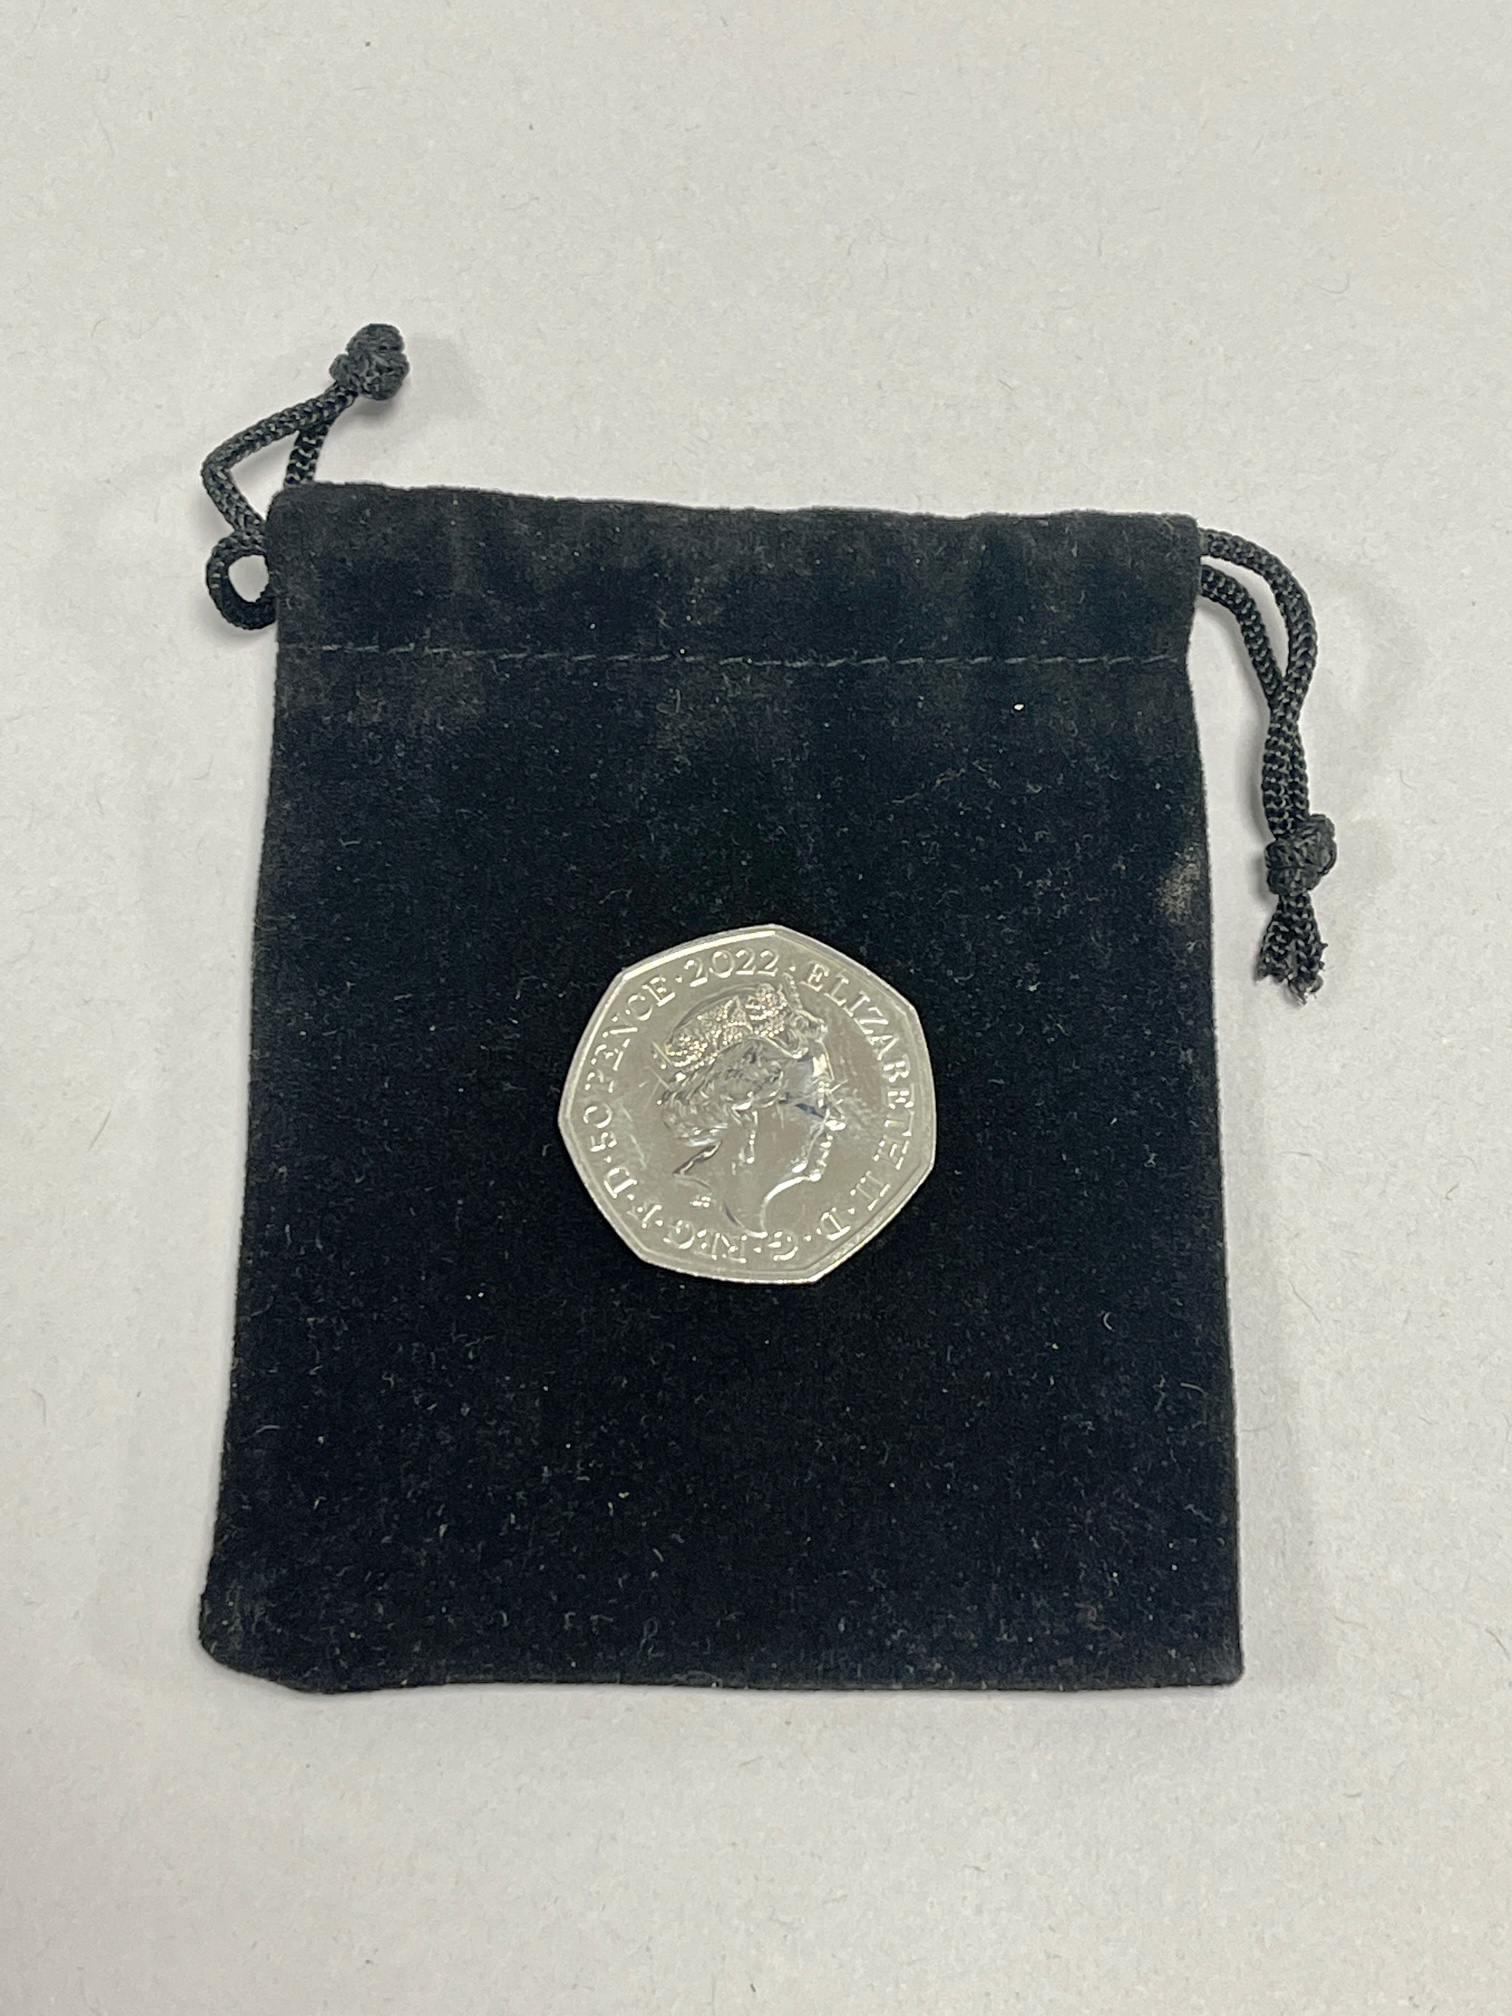 B2022 Memorabilia Coin - Coin Toss - Image 2 of 2